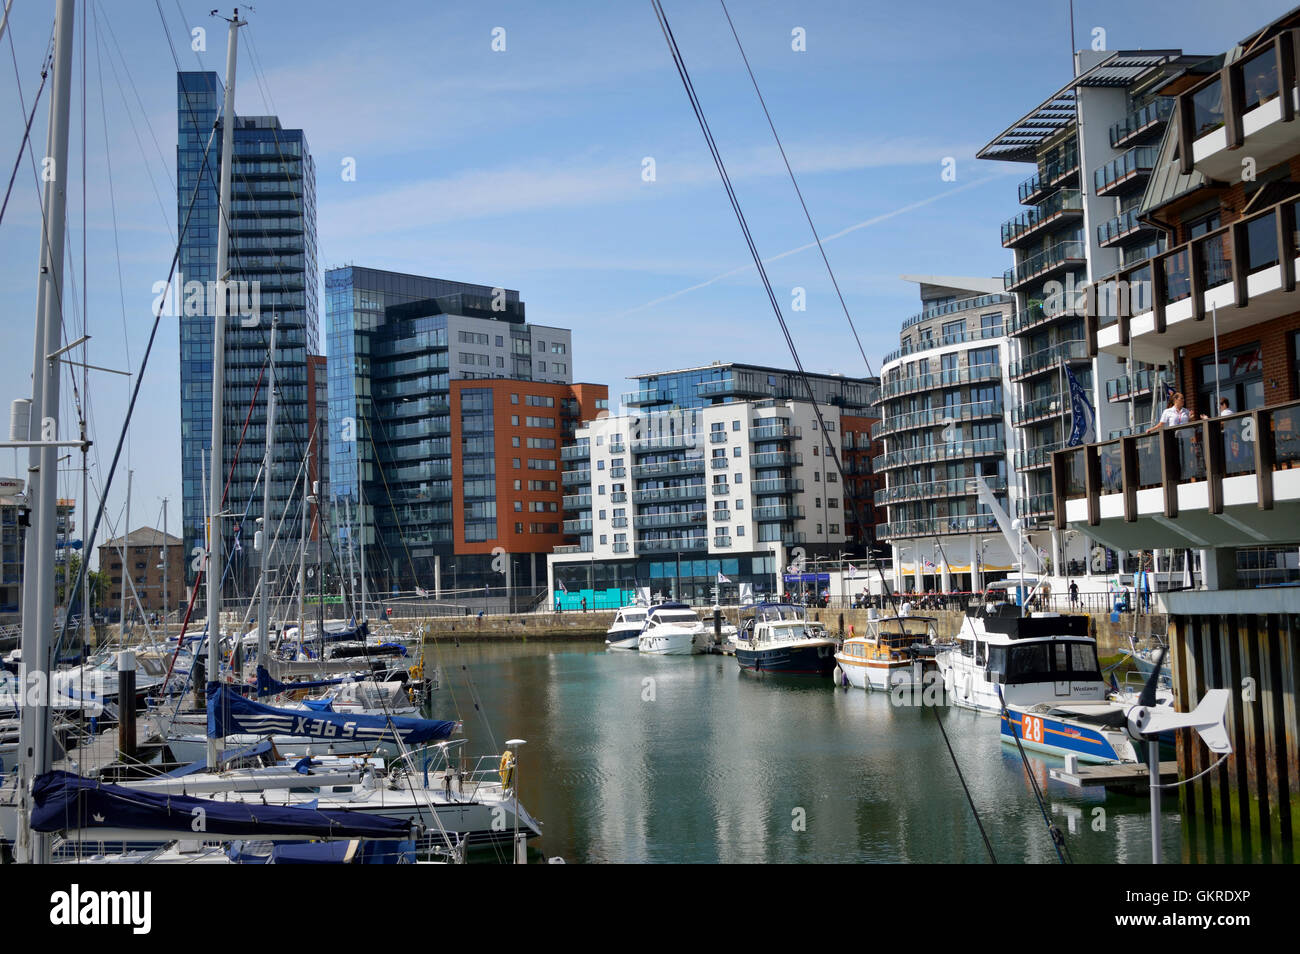 Ocean village marina à Southampton 2016 avec le nouveau développement Admirals Quay et la tour Moresby à gauche., Angleterre, Royaume-Uni Banque D'Images